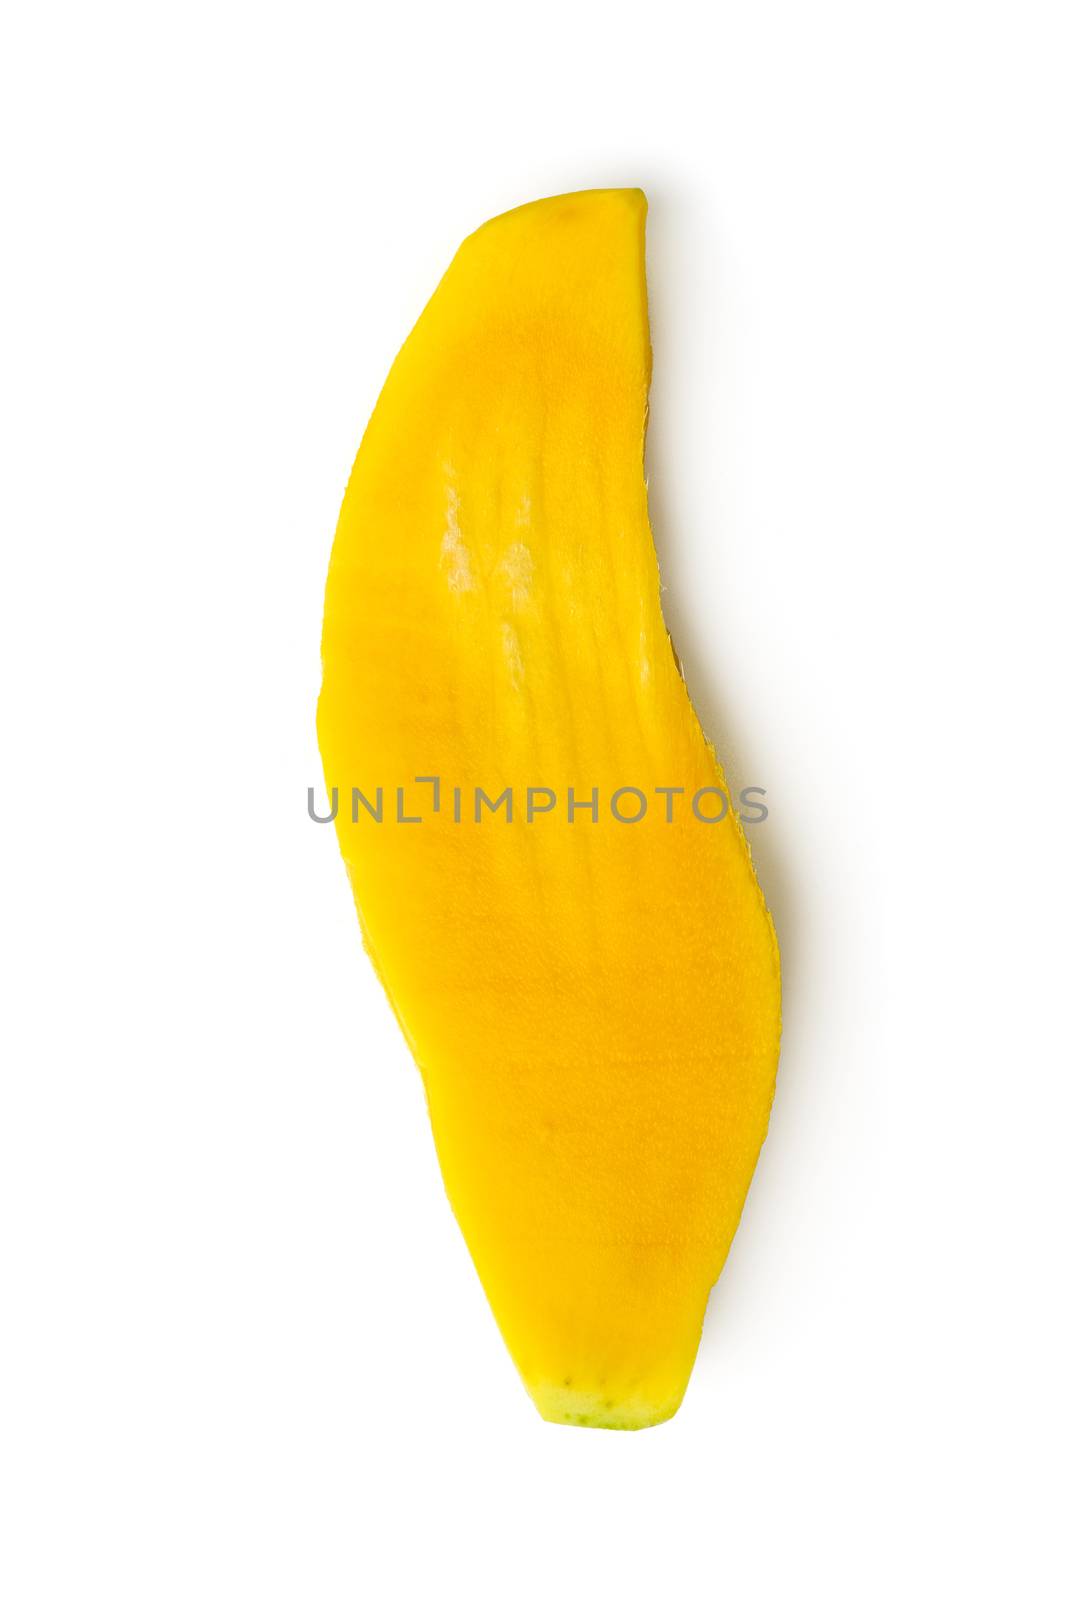 mango seed by antpkr